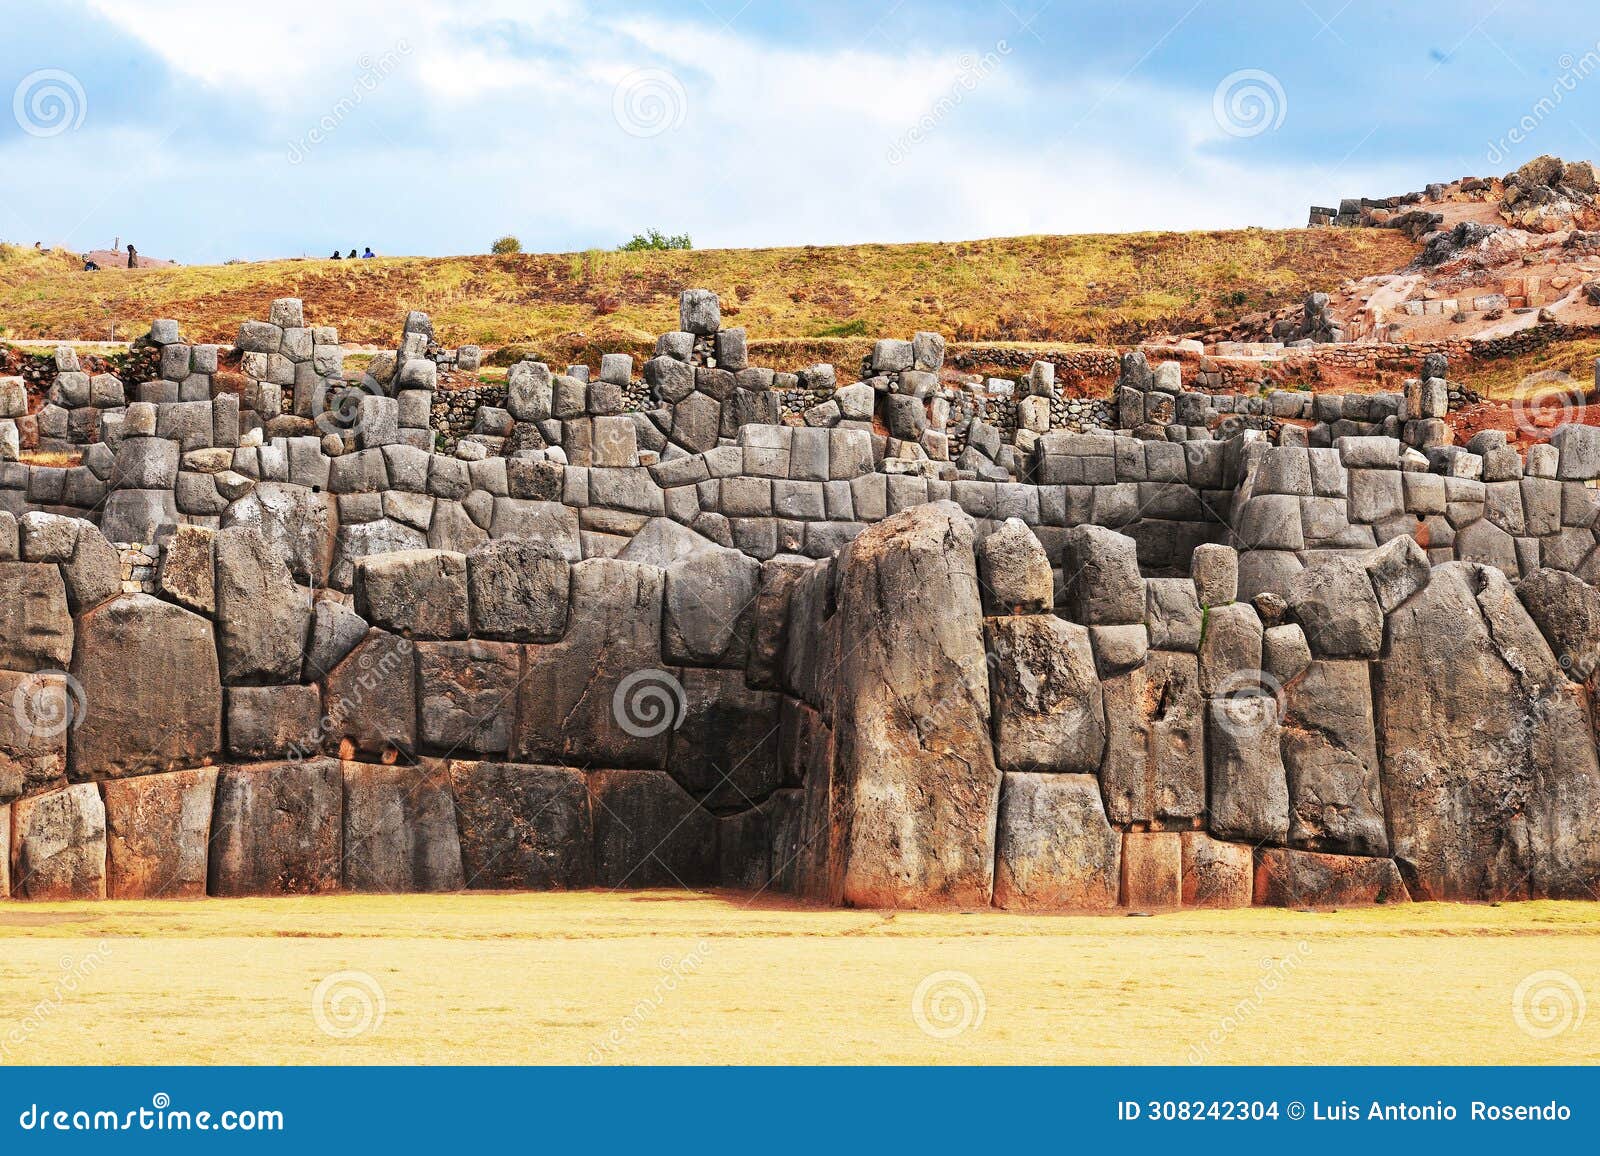 sacsayhuaman, ruinas incas en cusco, peru